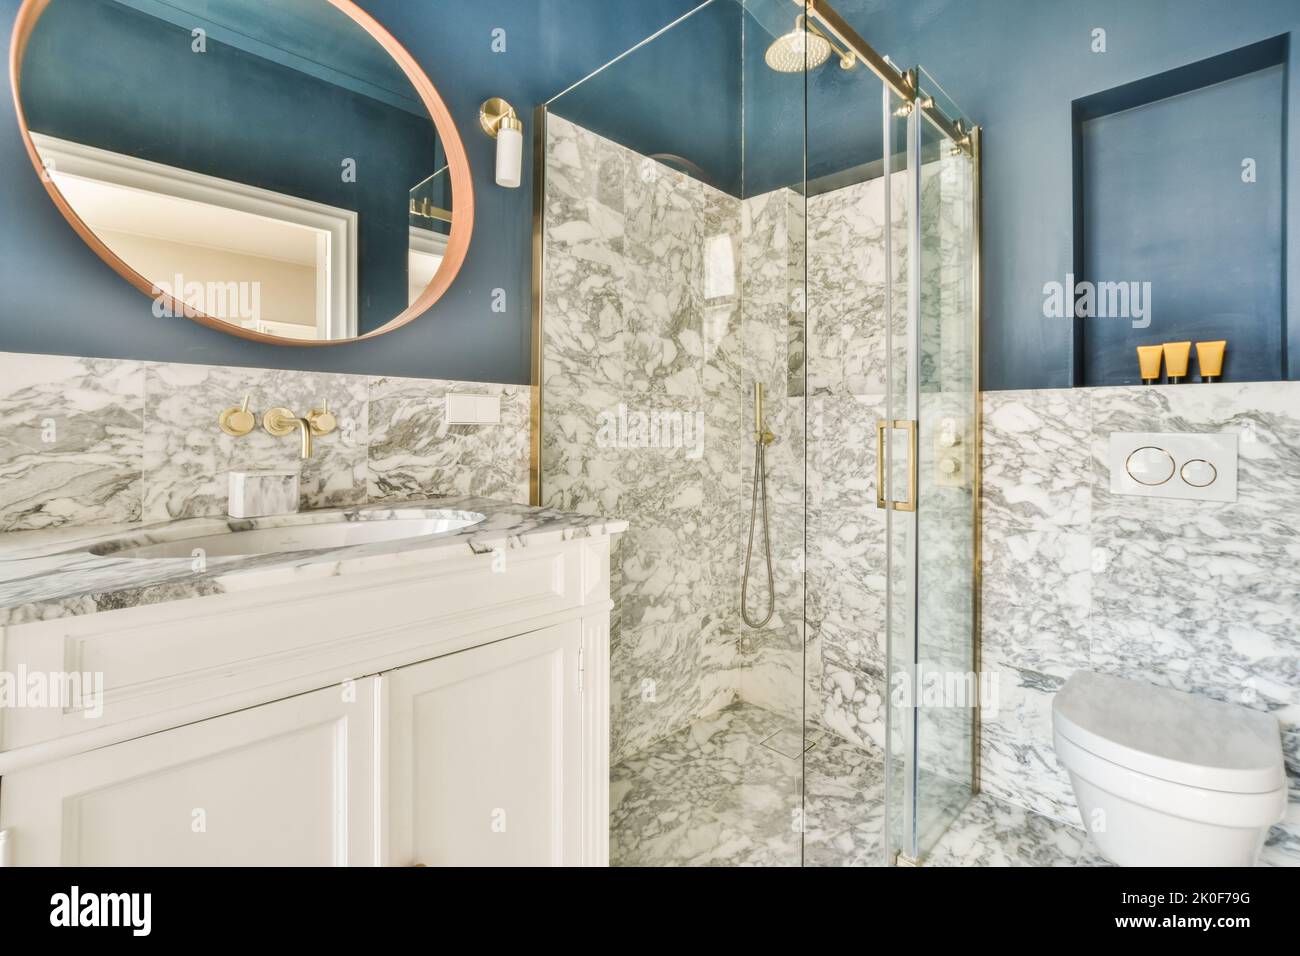 Baignoire avec douche en verre placée dans le coin près du lavabo et des toilettes dans une petite salle de bains lumineuse avec des murs en marbre Banque D'Images